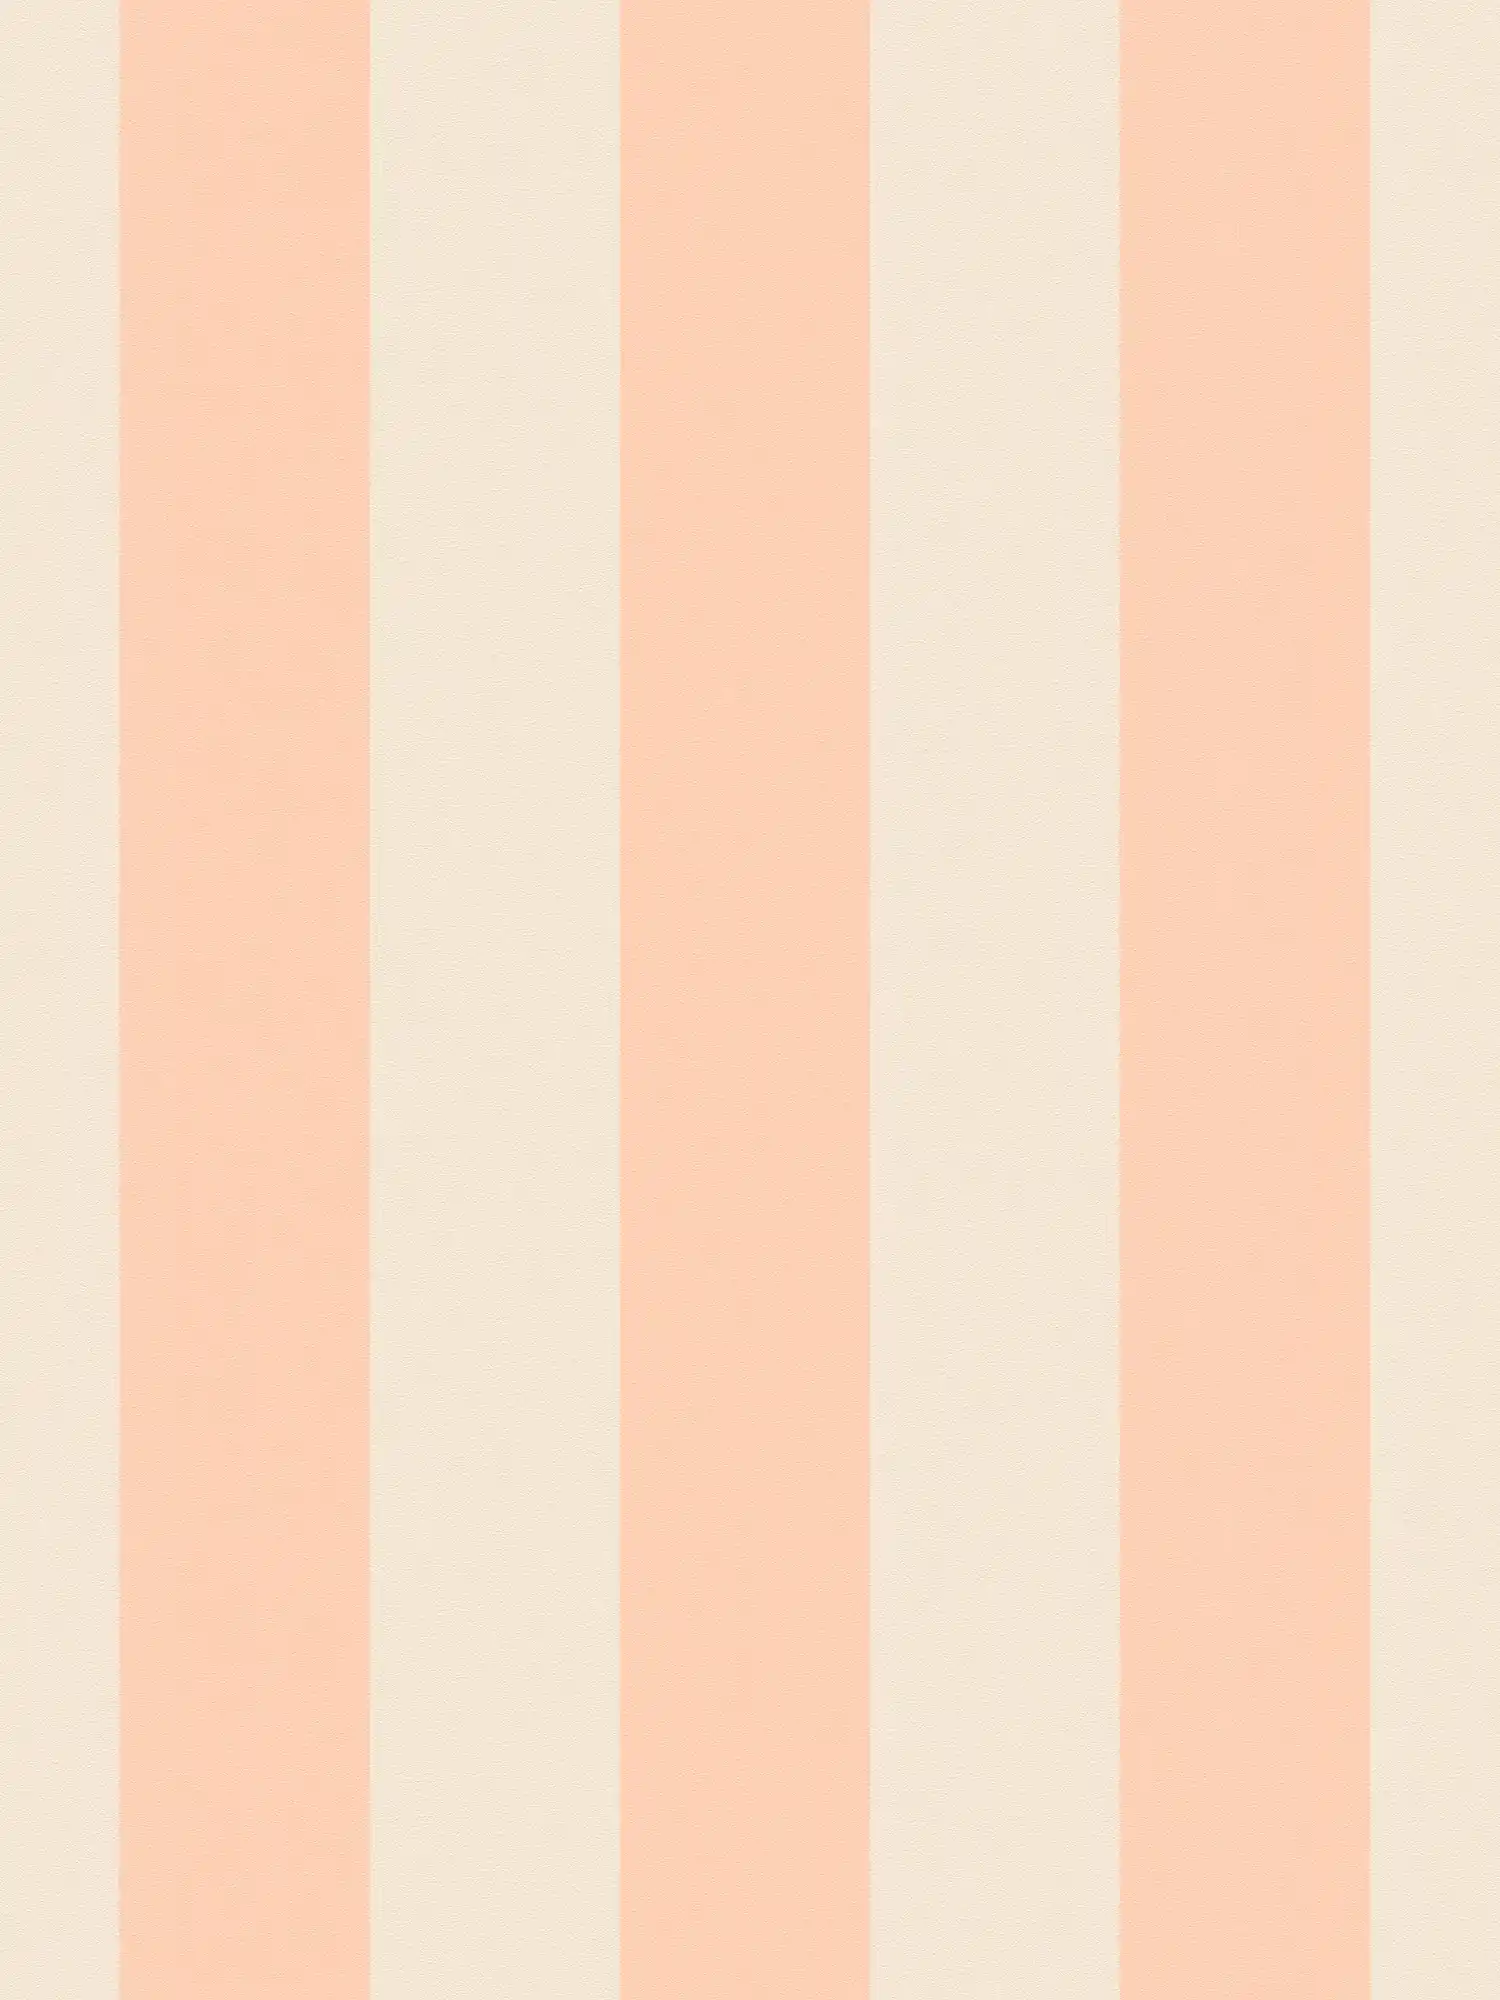 Vliesbehang met blokstrepen in zachte tinten - crème, roze
